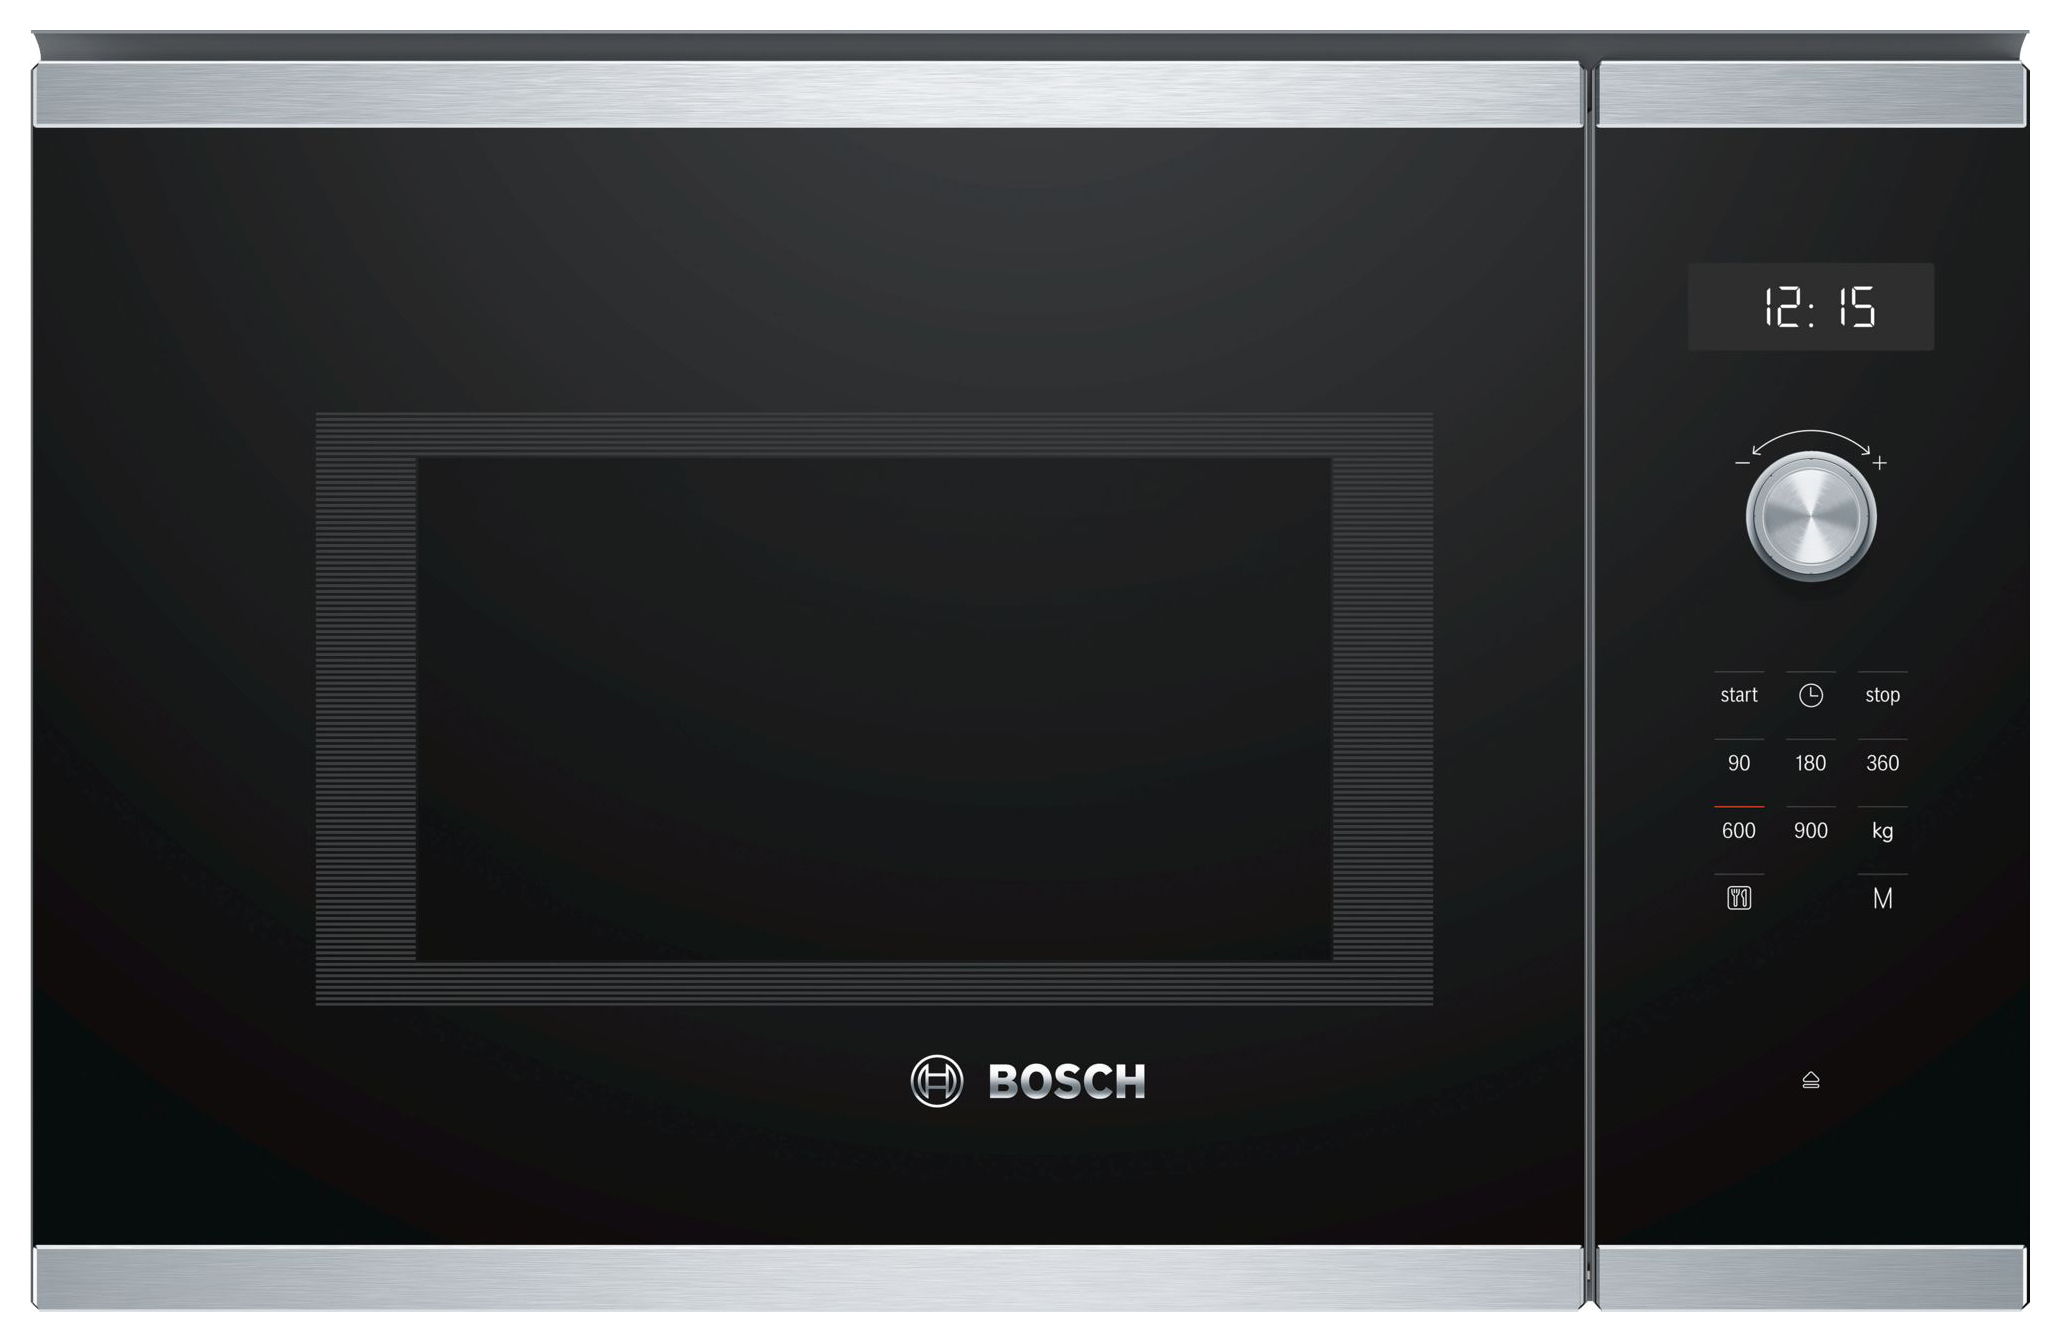 Встраиваемая микроволновая печь Bosch Serie 6 BFL554MS0 Black/Silver комплекс питания традиционное меню с мясом для снижения веса